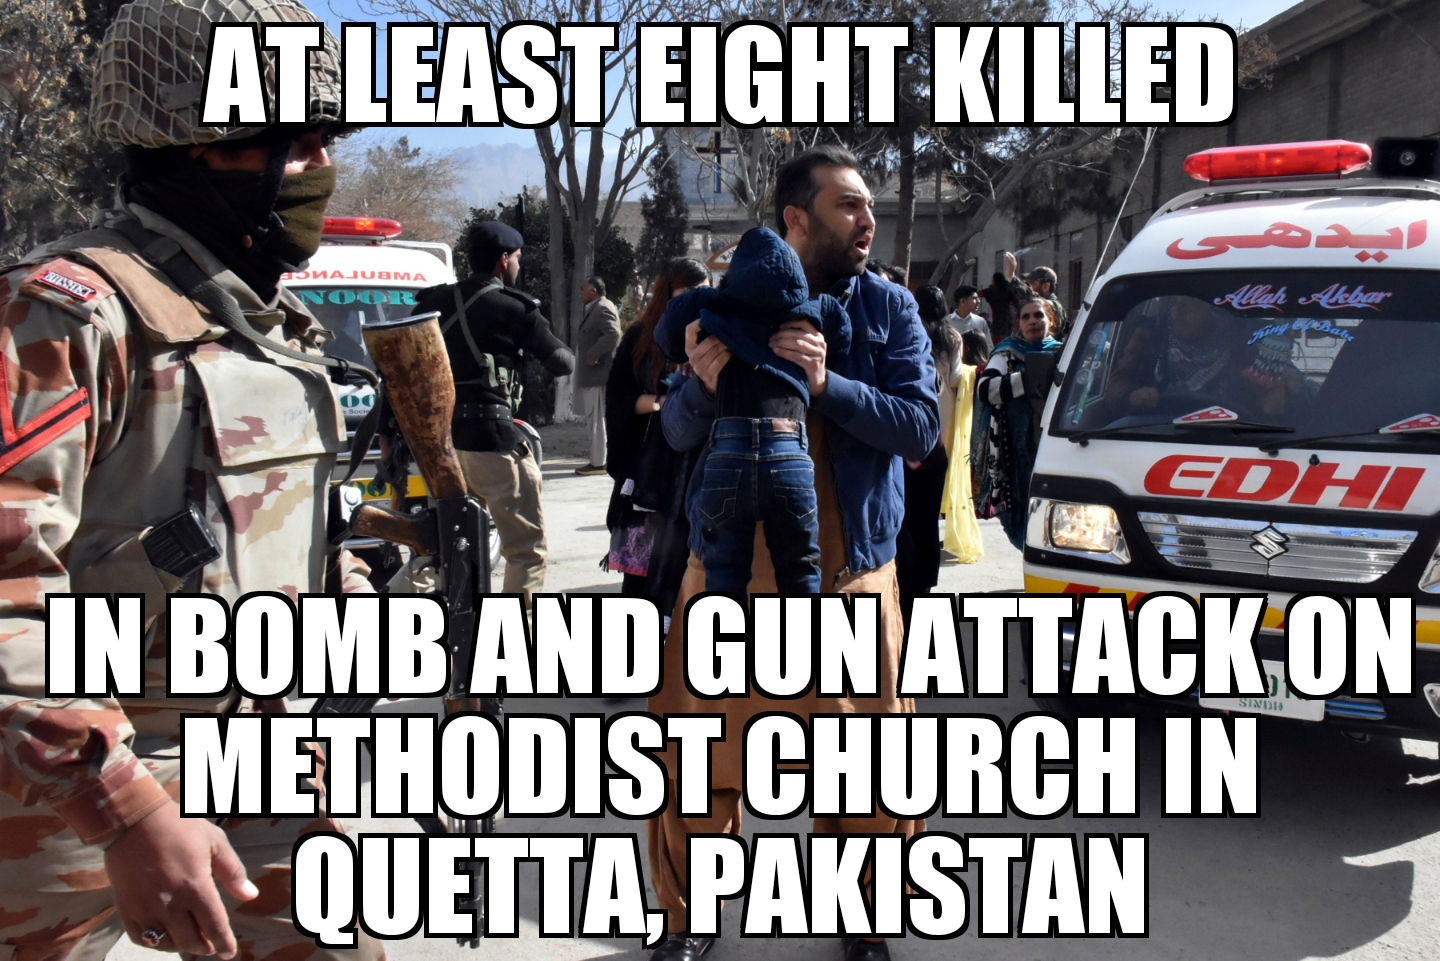 Quetta church attack